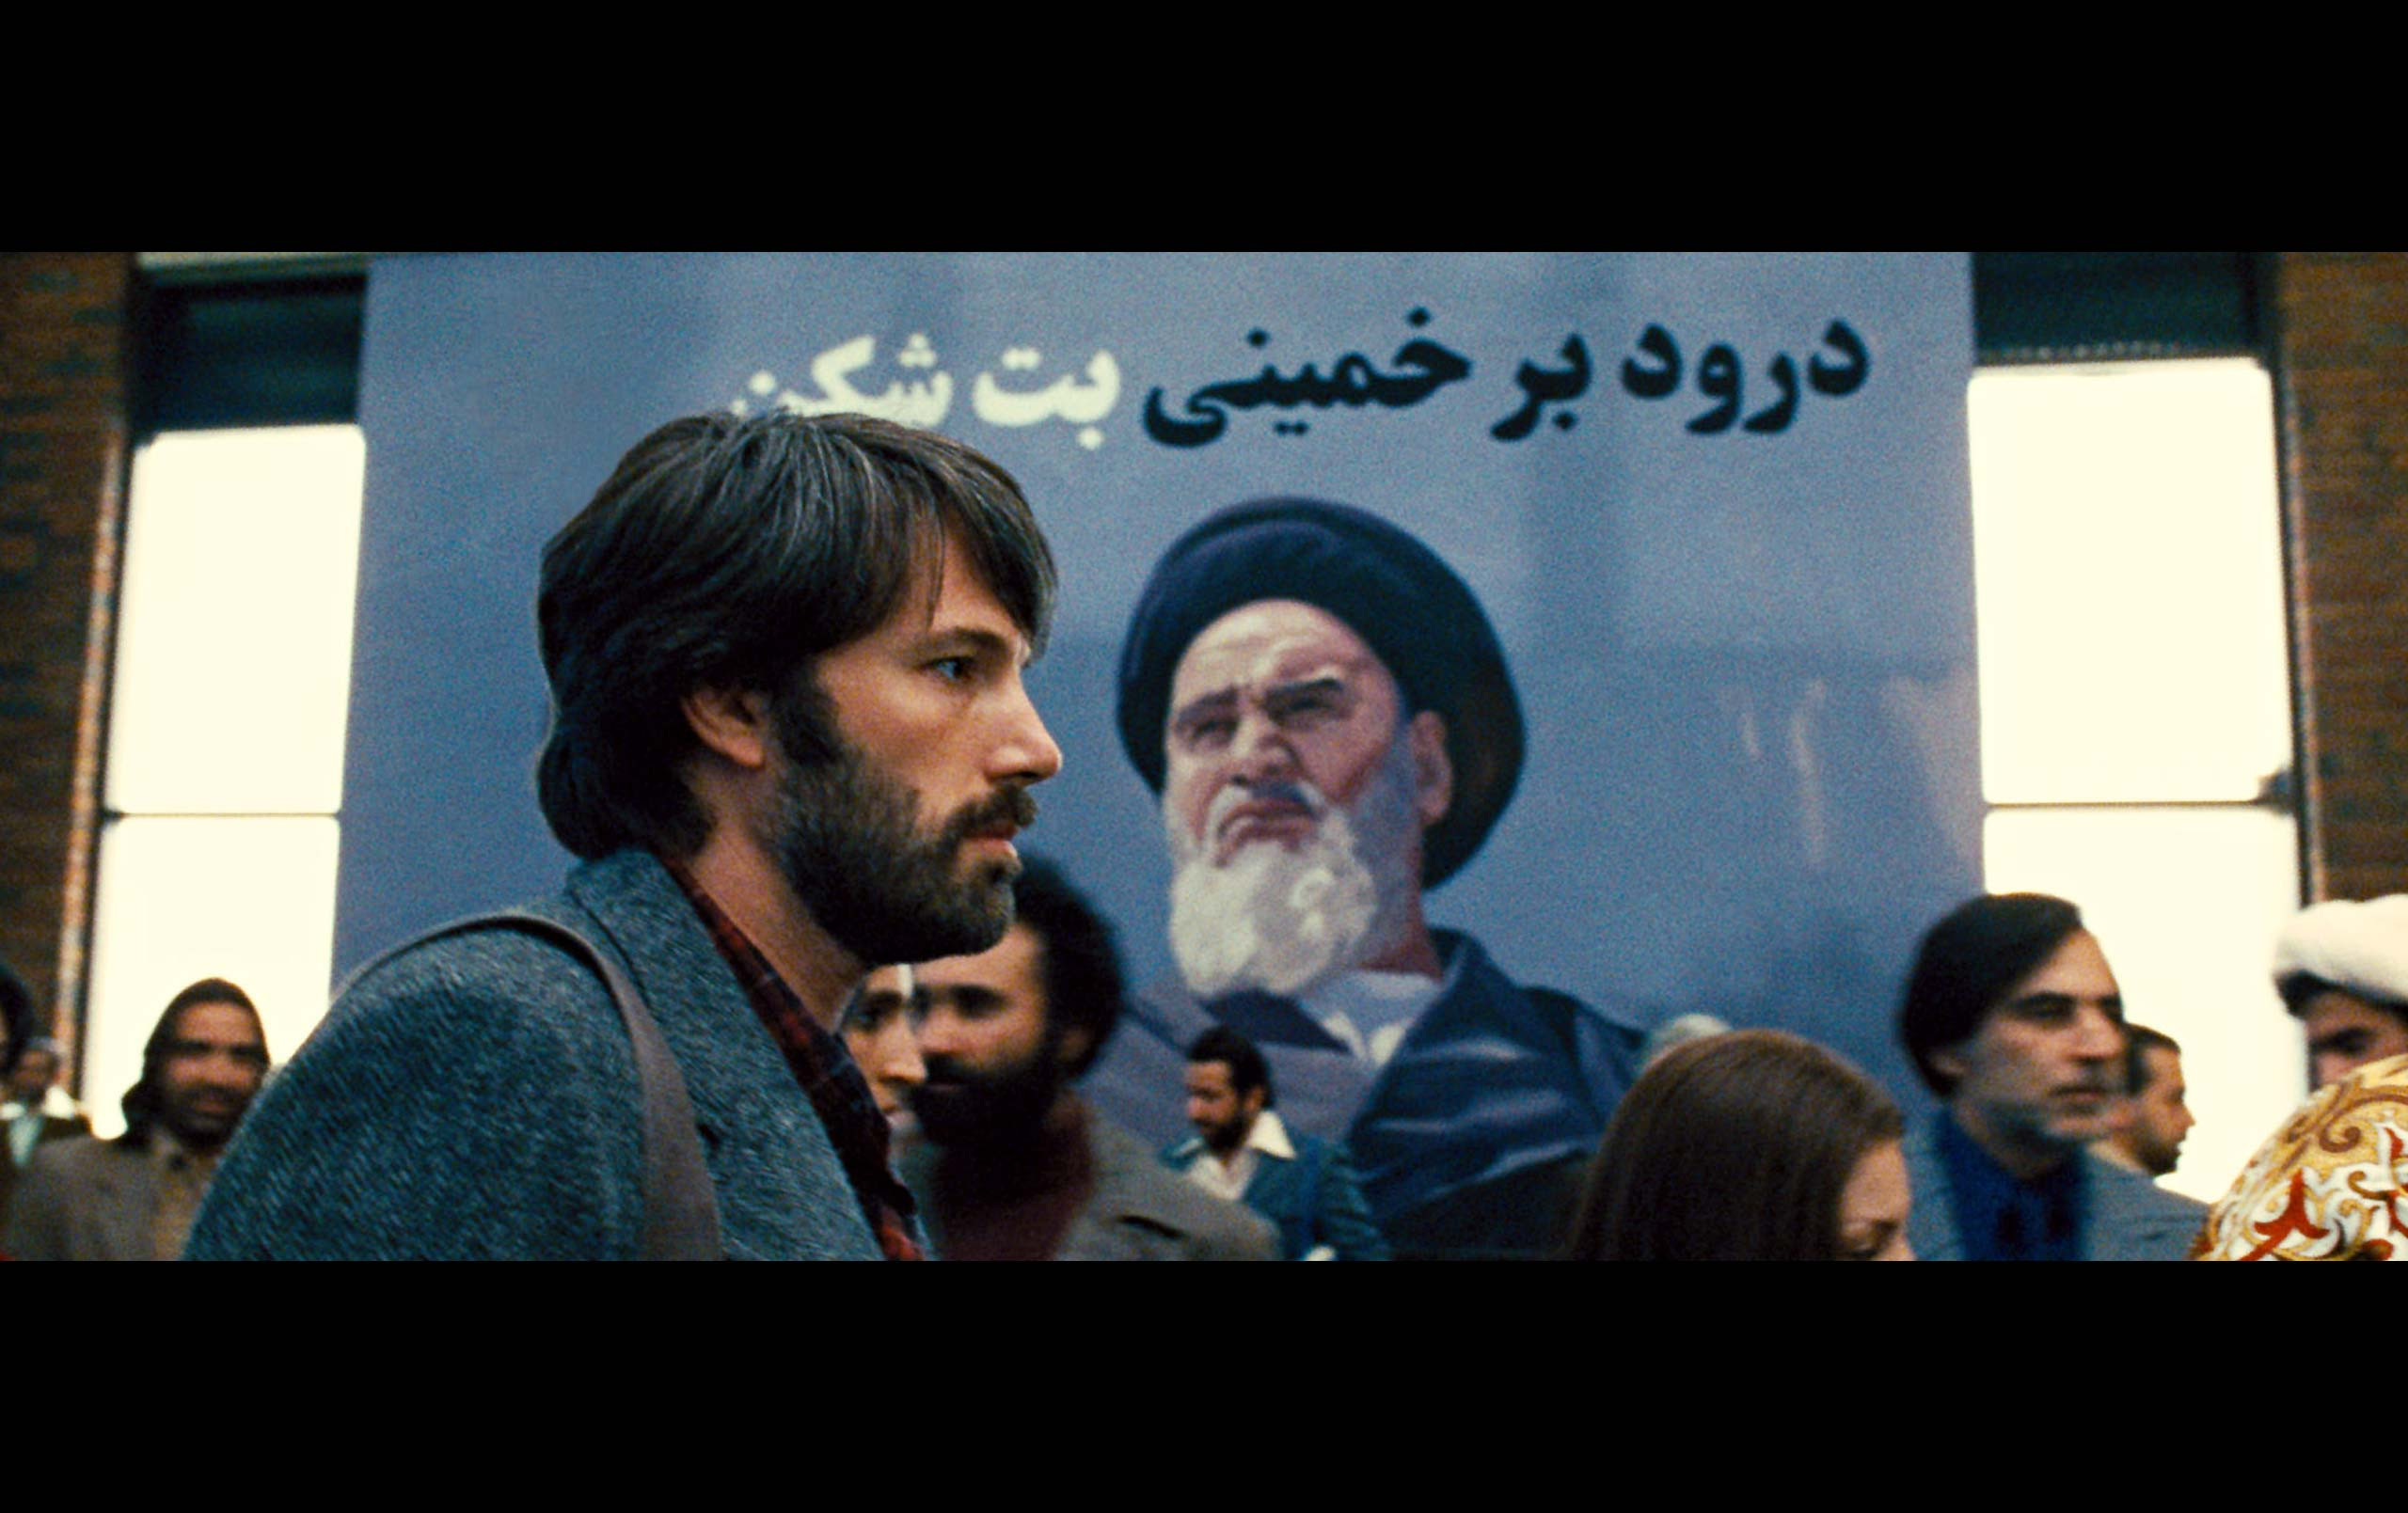 Πολιτικά κίνητρα βλέπει το Ιράν πίσω από τη βράβευση του «Argo»